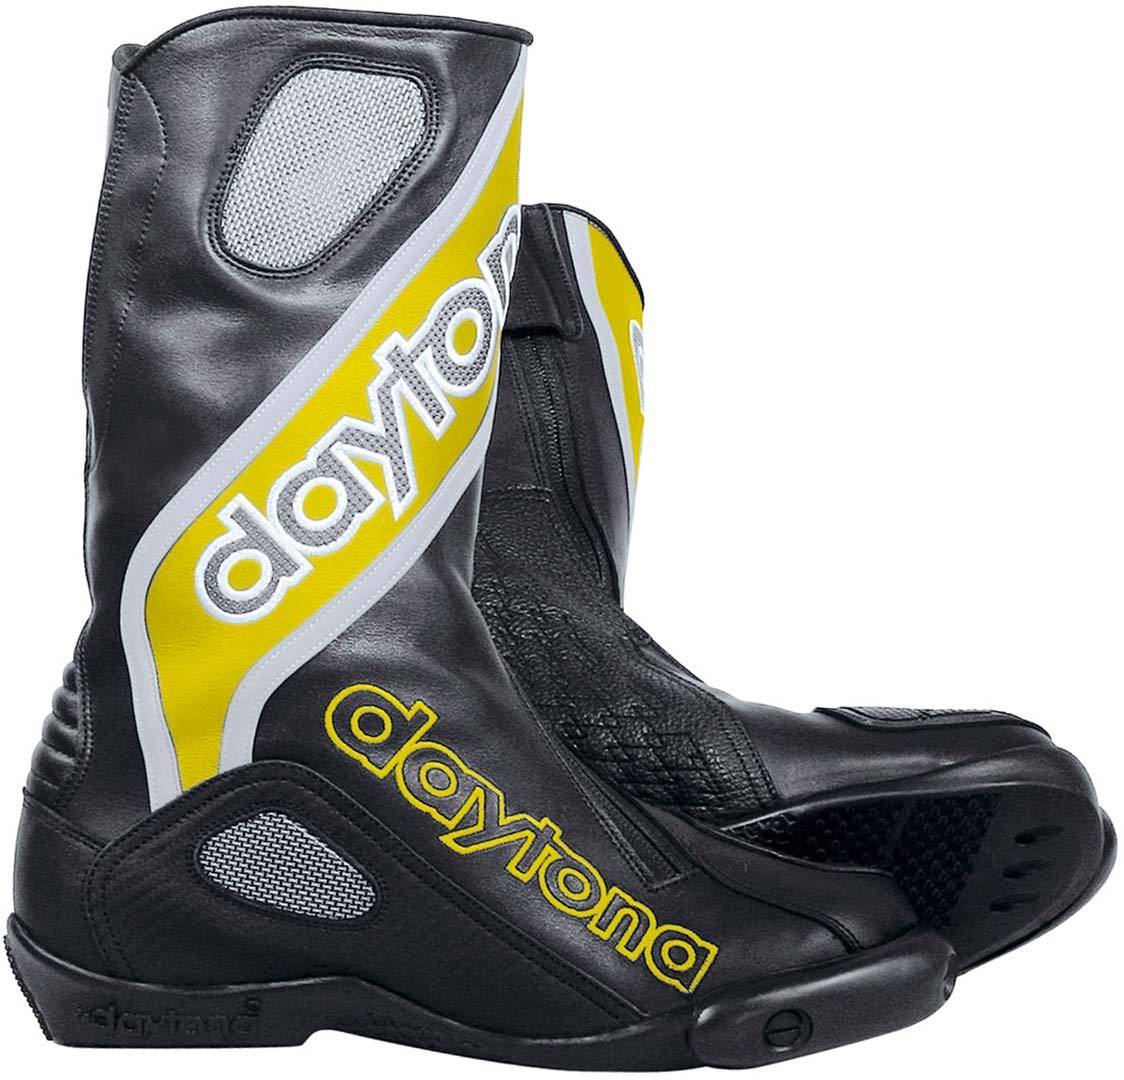 Daytona Evo-Sports GTX Gore-Tex Bottes de moto imperméables Noir Jaune 38